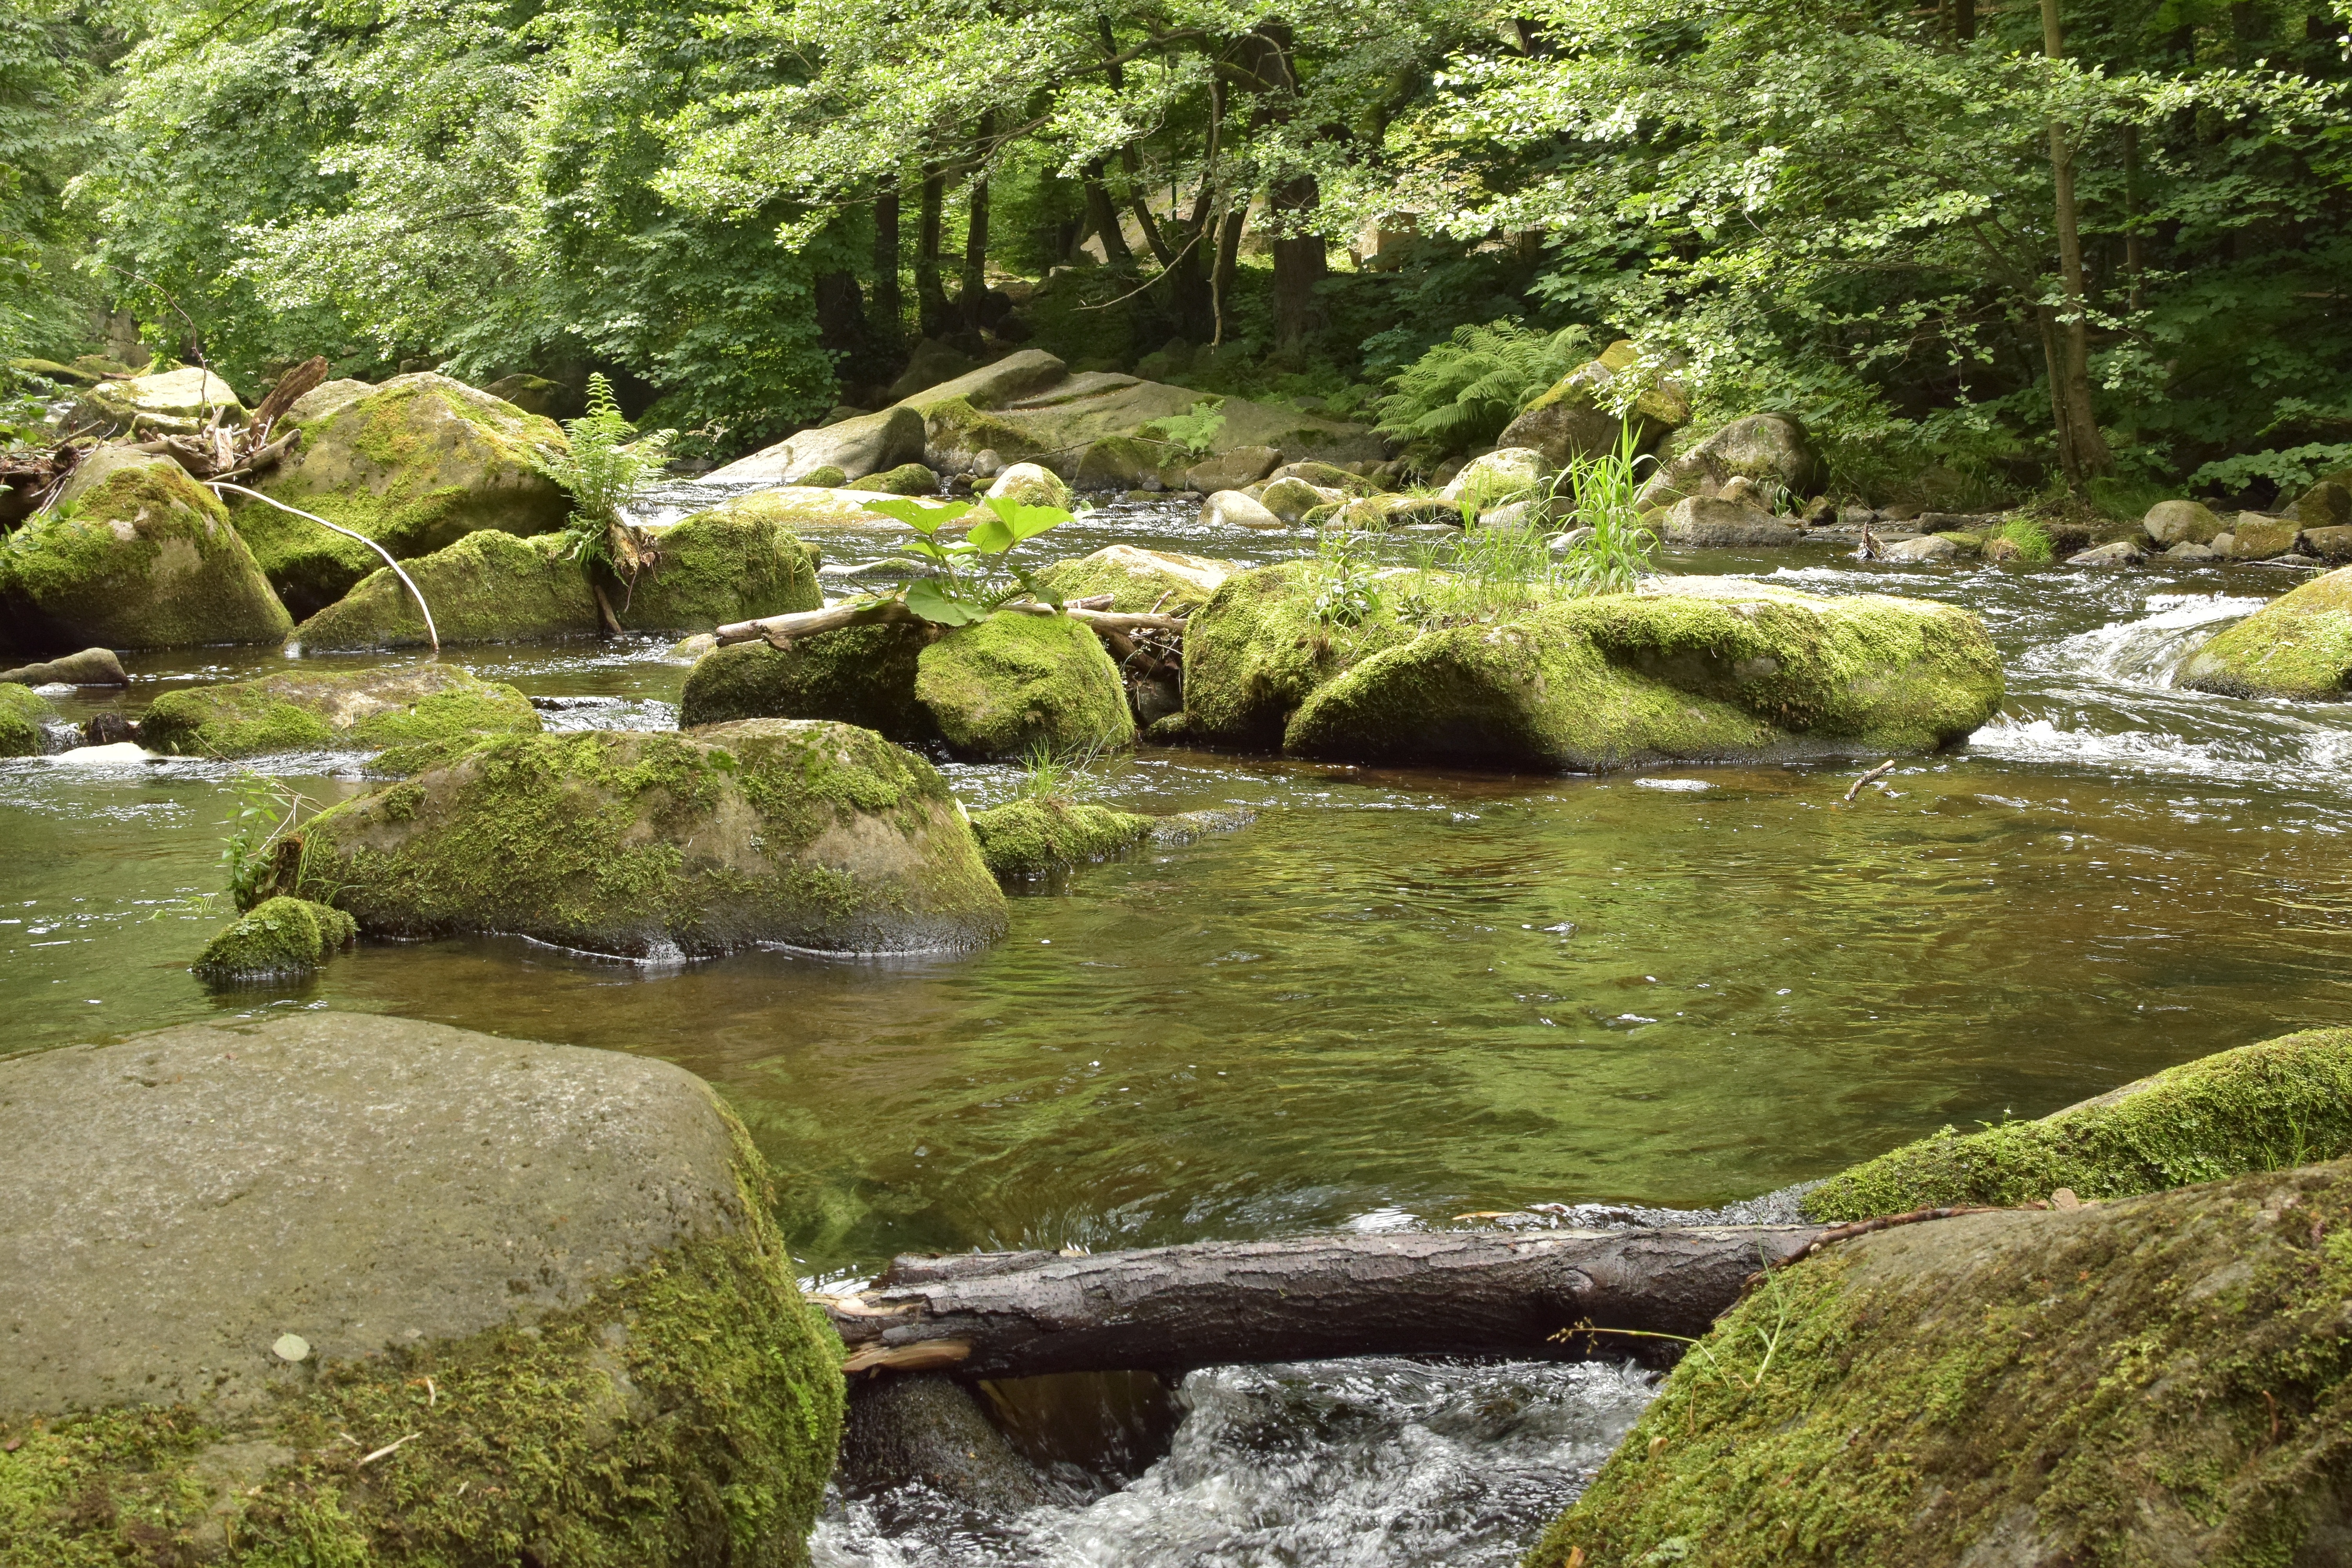 Stone river. Ручей. Горная река. Камни в реке. Ручей в лесу.